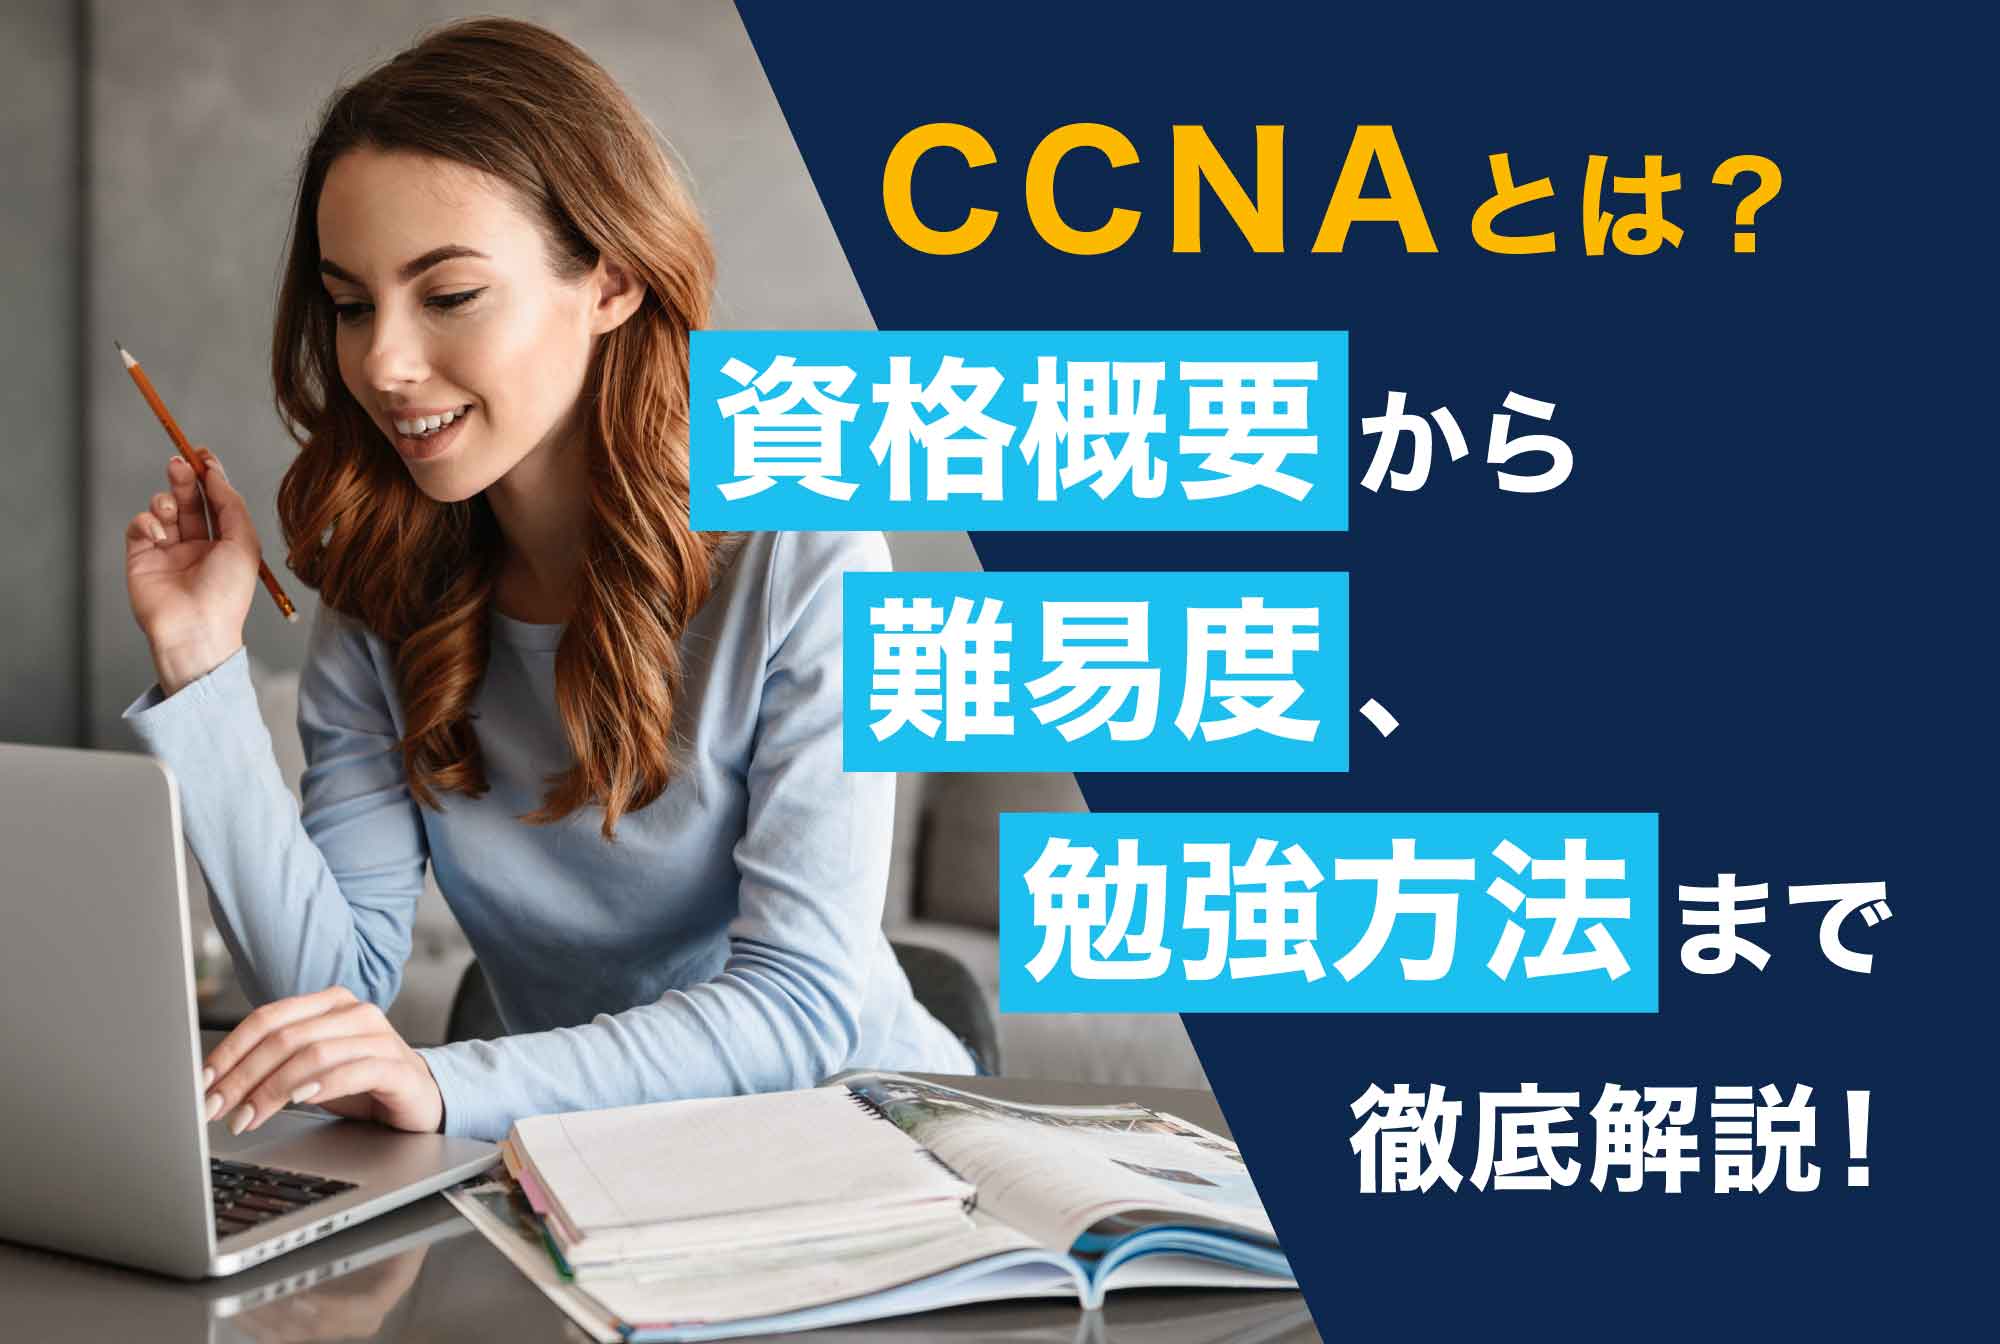 21年最新 Ccnaとは 改定後の資格概要や難易度を現役講師が解説 第二の就活